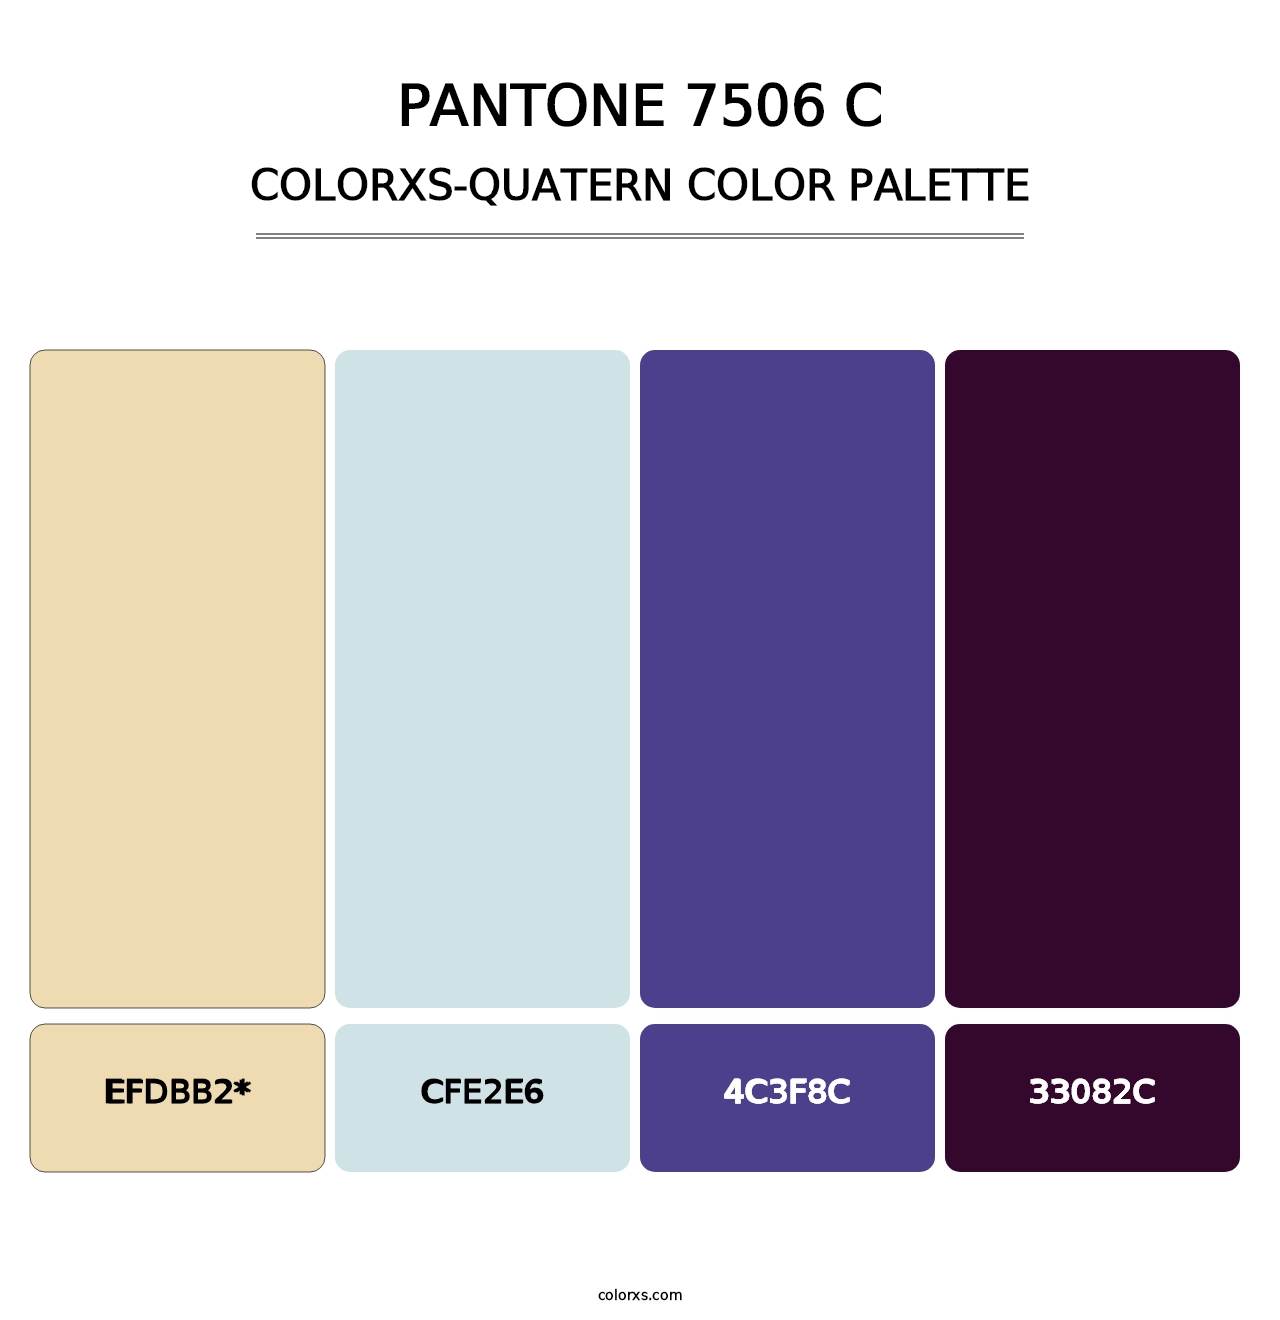 PANTONE 7506 C - Colorxs Quatern Palette